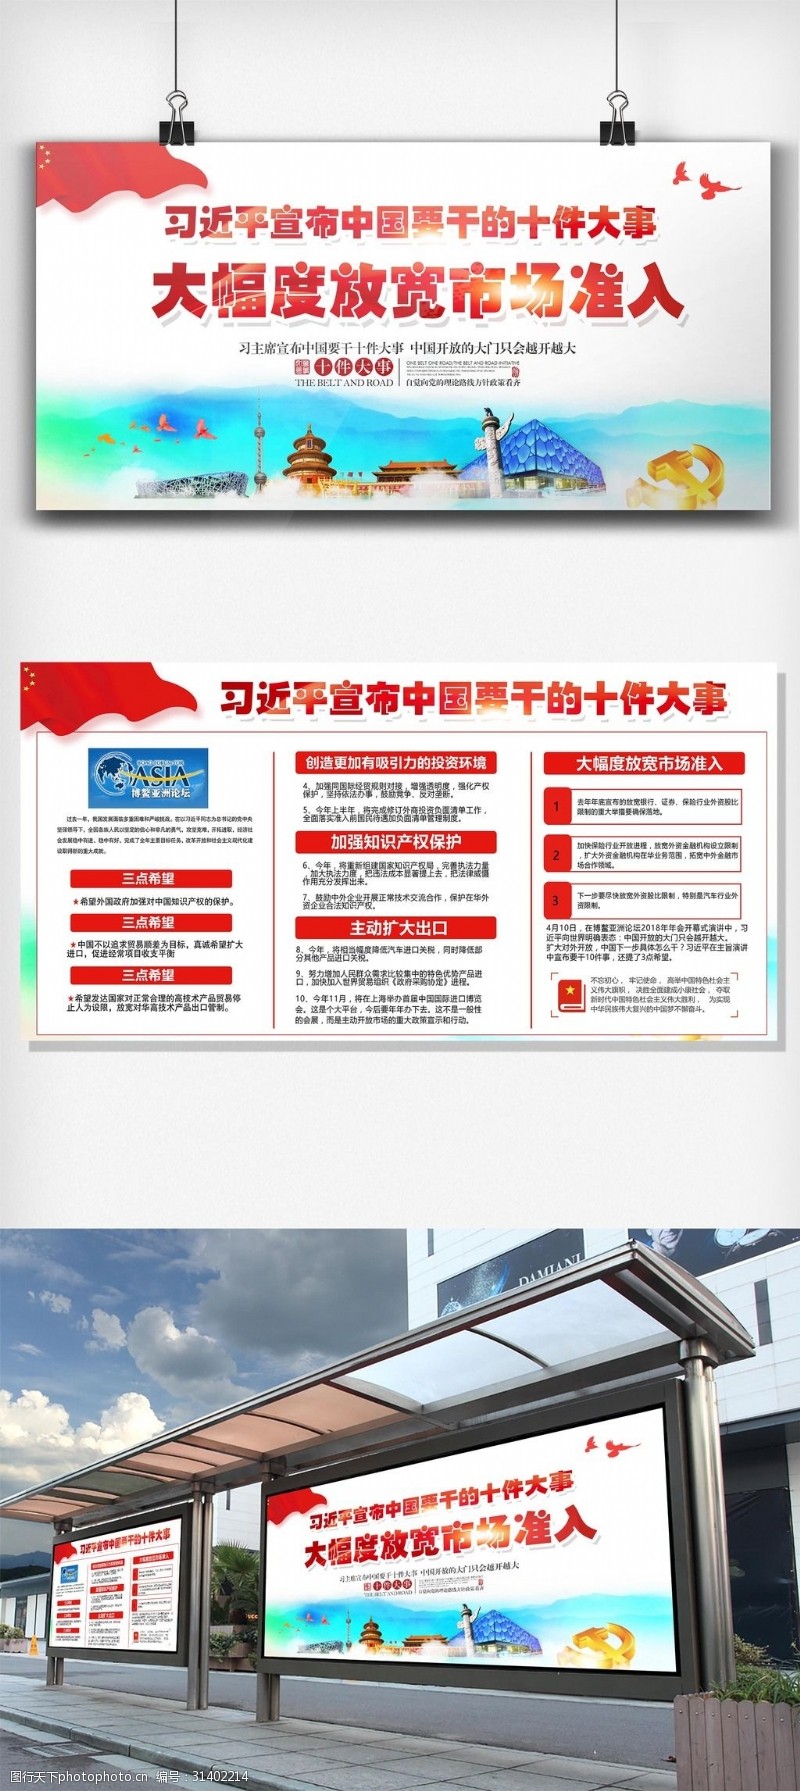 宣传栏模板习主席宣布中国要干的十件大事展板